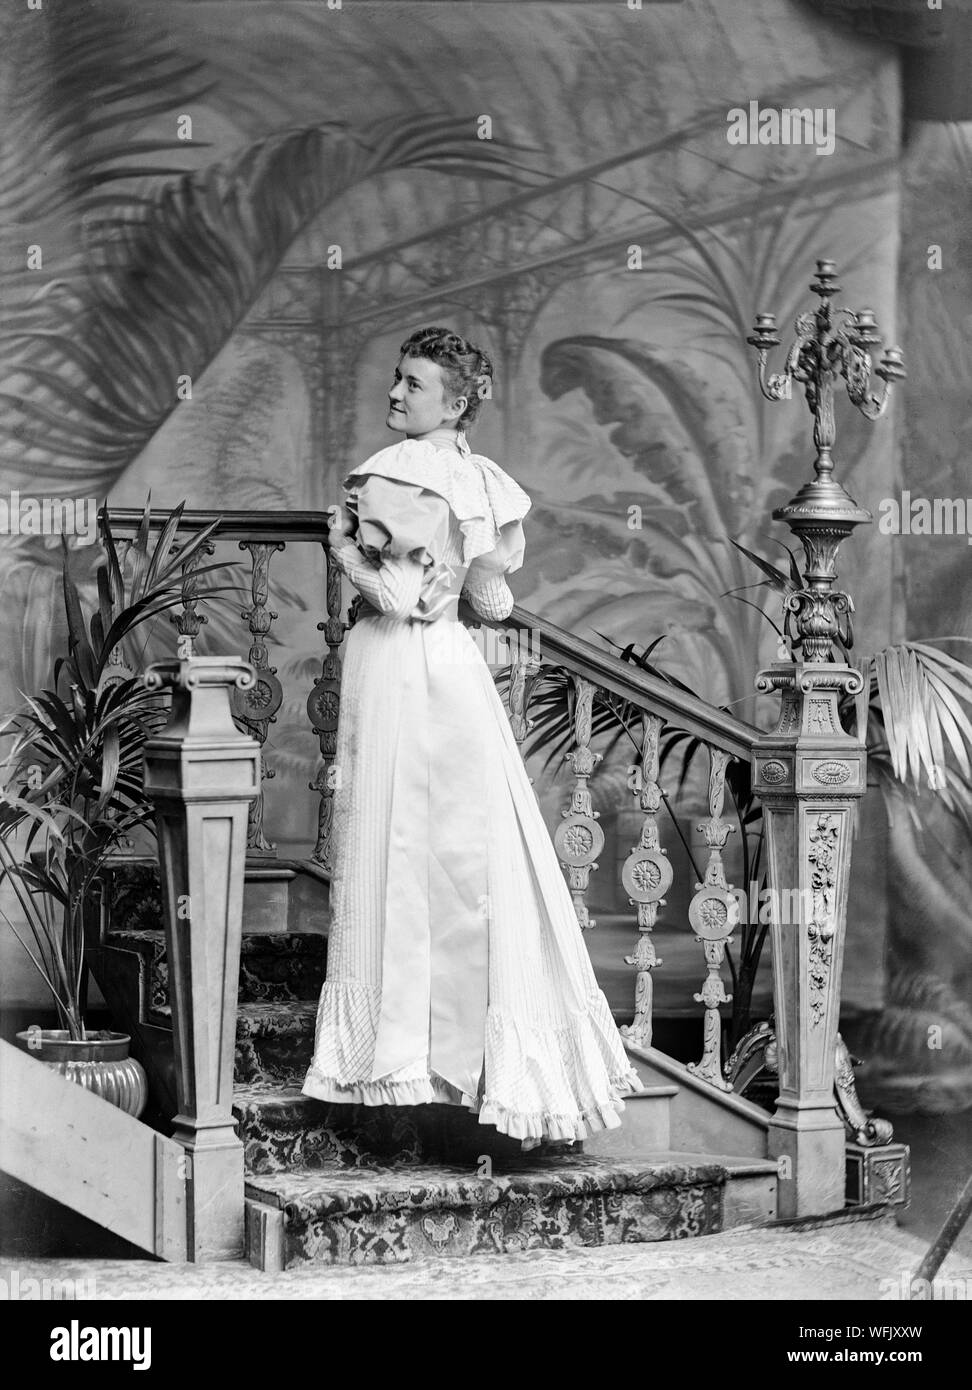 Un vintage victoriano tardío o principios Edwardian fotografía en blanco y negro mostrando una señorita en un fino vestido a la moda de la época, posando en un estudio fotográfico, con su espalda ligeramente hacia la cámara, como ella mira sobre su hombro. Ella está de pie sobre un conjunto de escaleras. Foto de stock